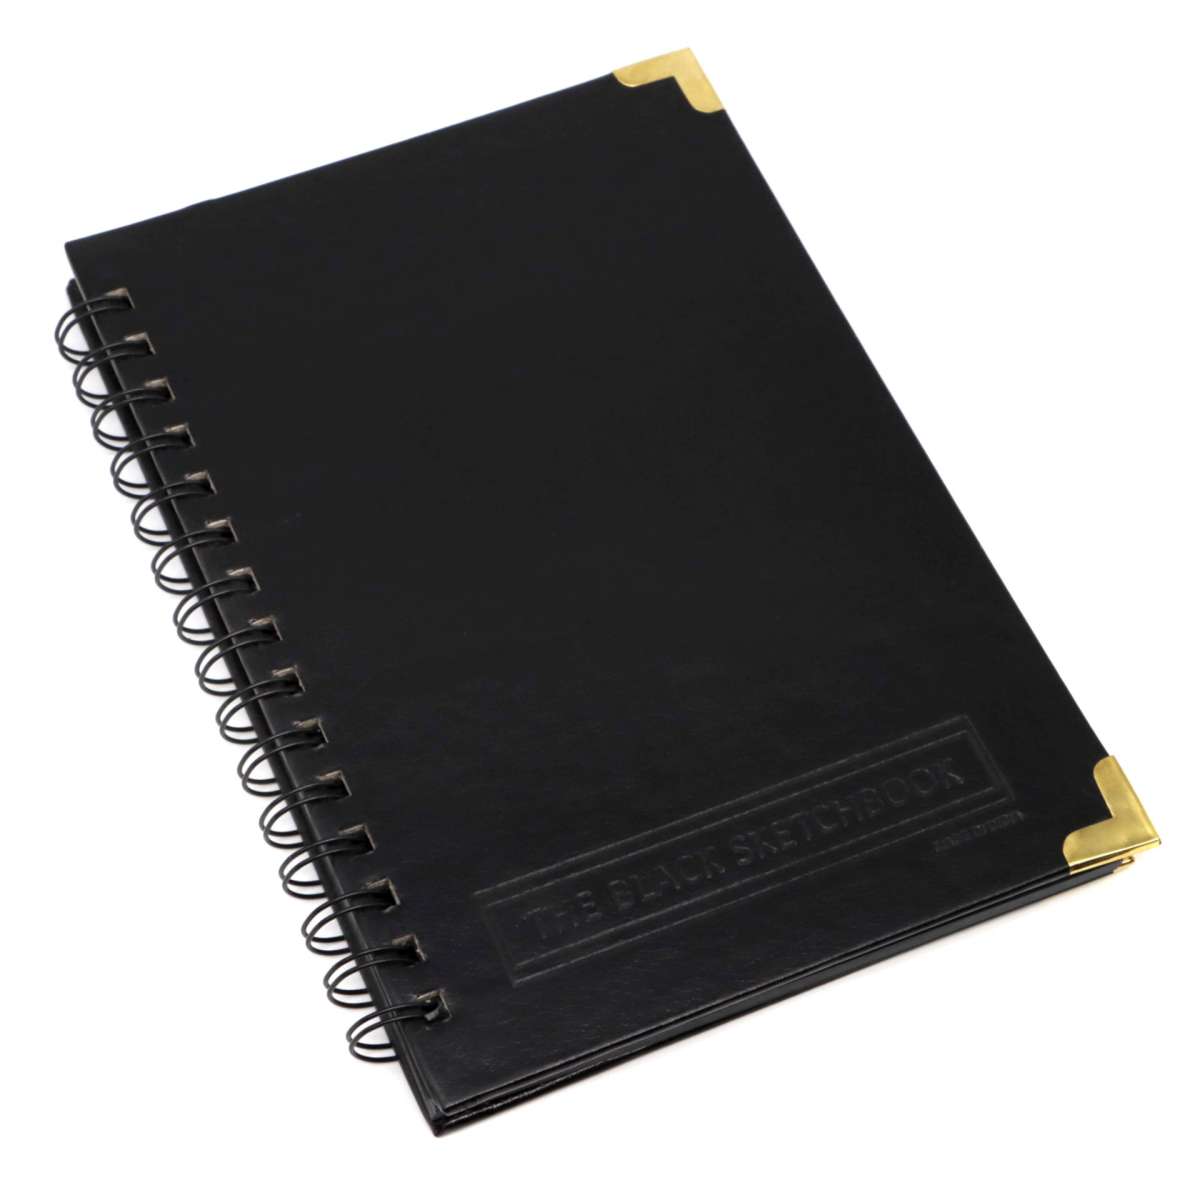 black paper sketchbook